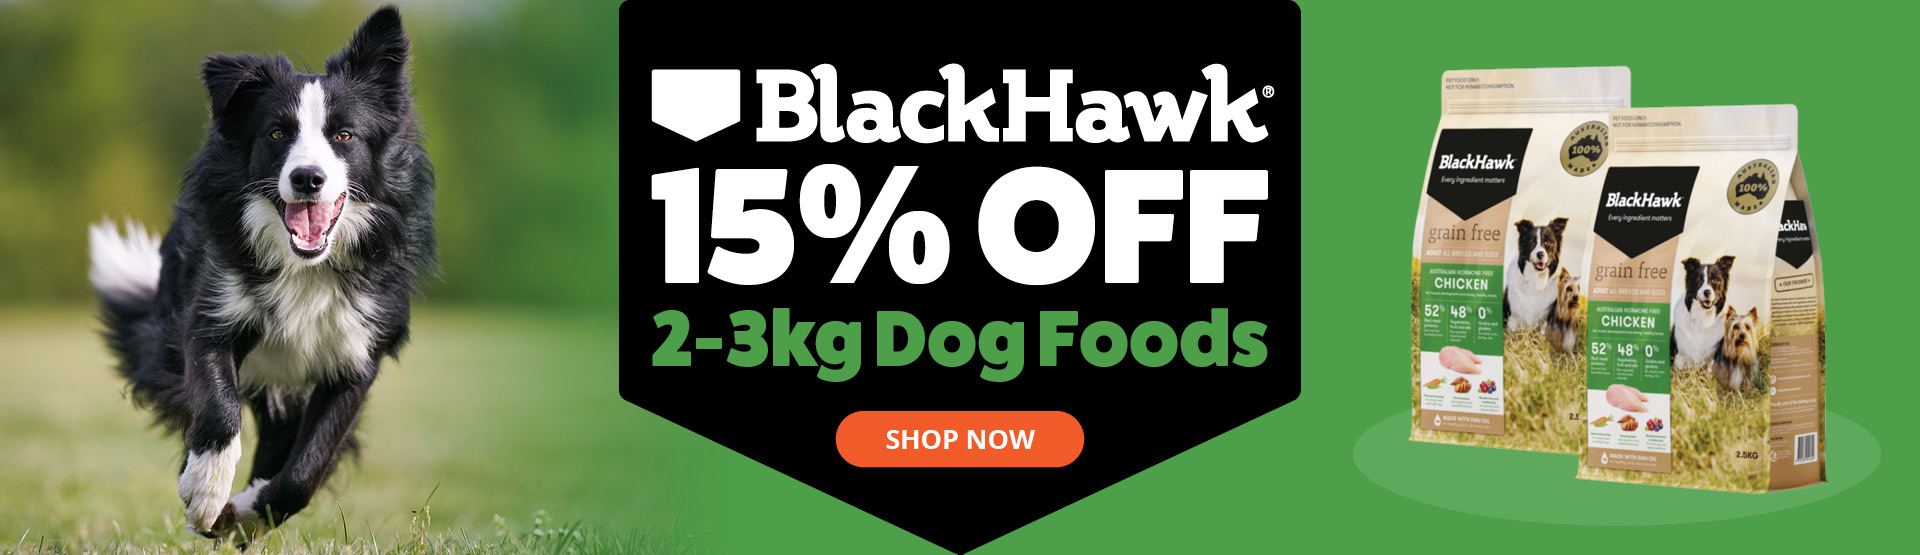 Black Hawk 2-3kg Dog Foods 15% Off